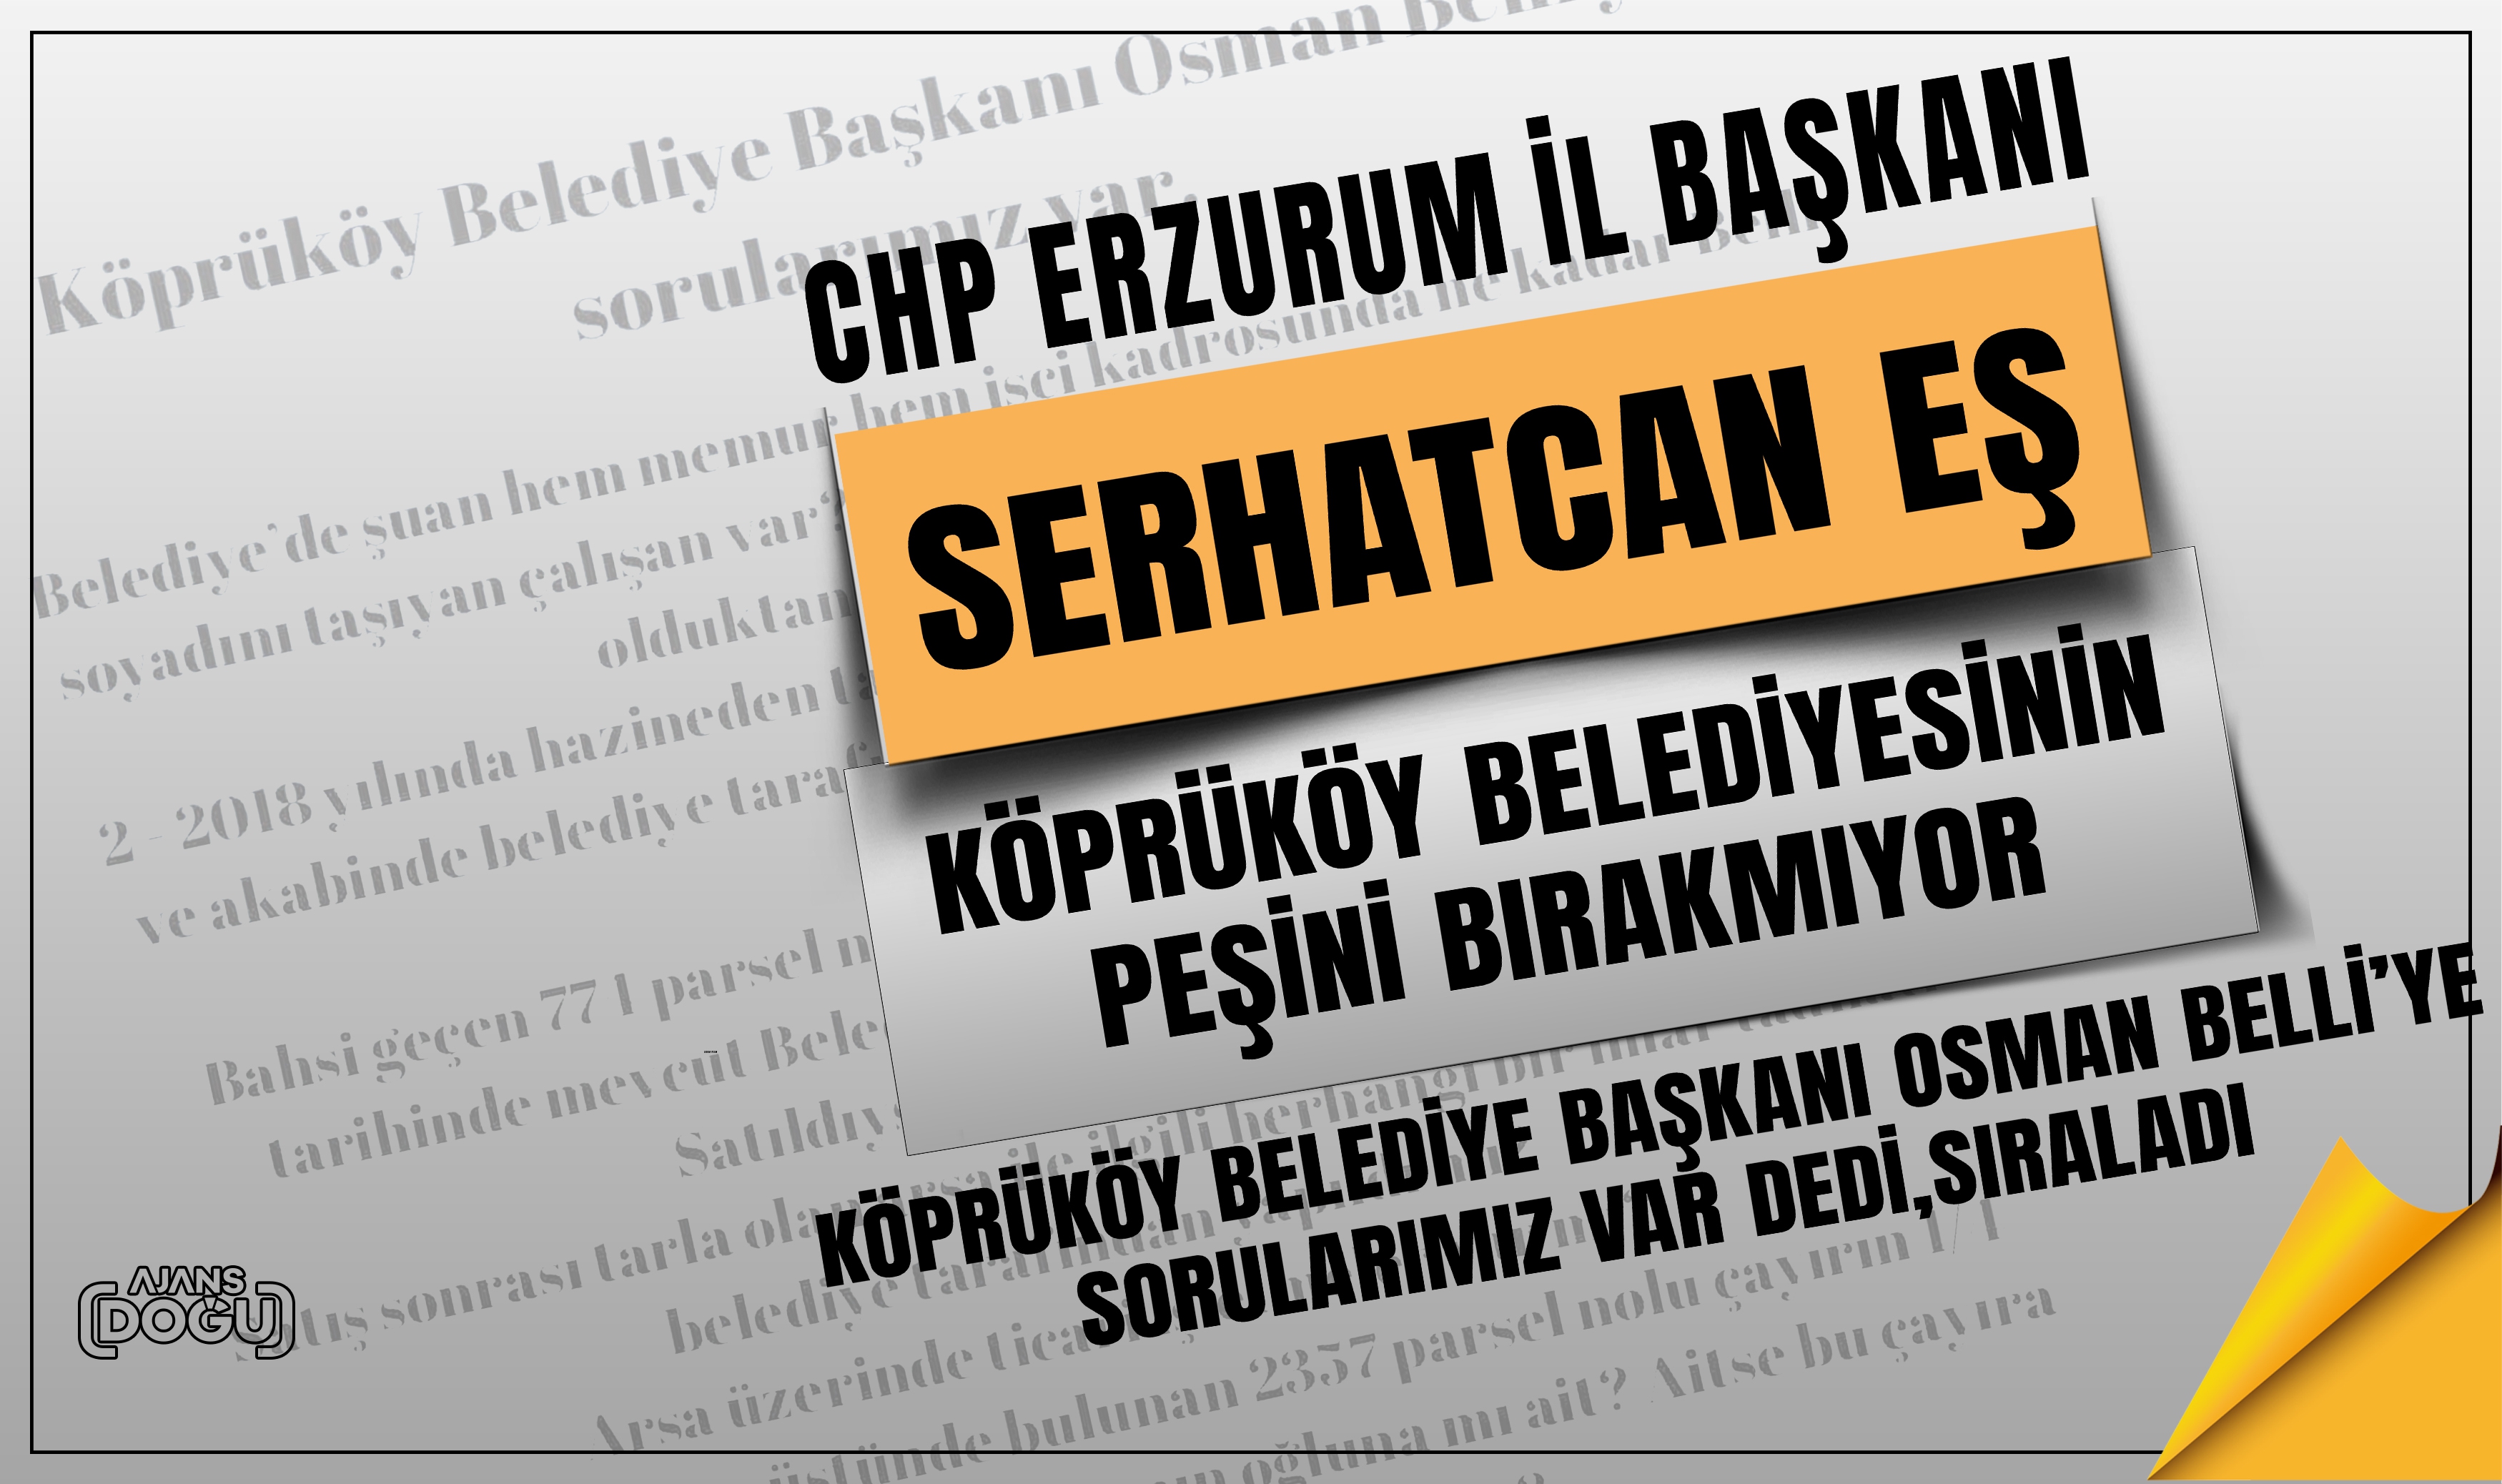 CHP Erzurum il Başkanı Eş Köprüköy belediyesinin peşini bırakmıyor